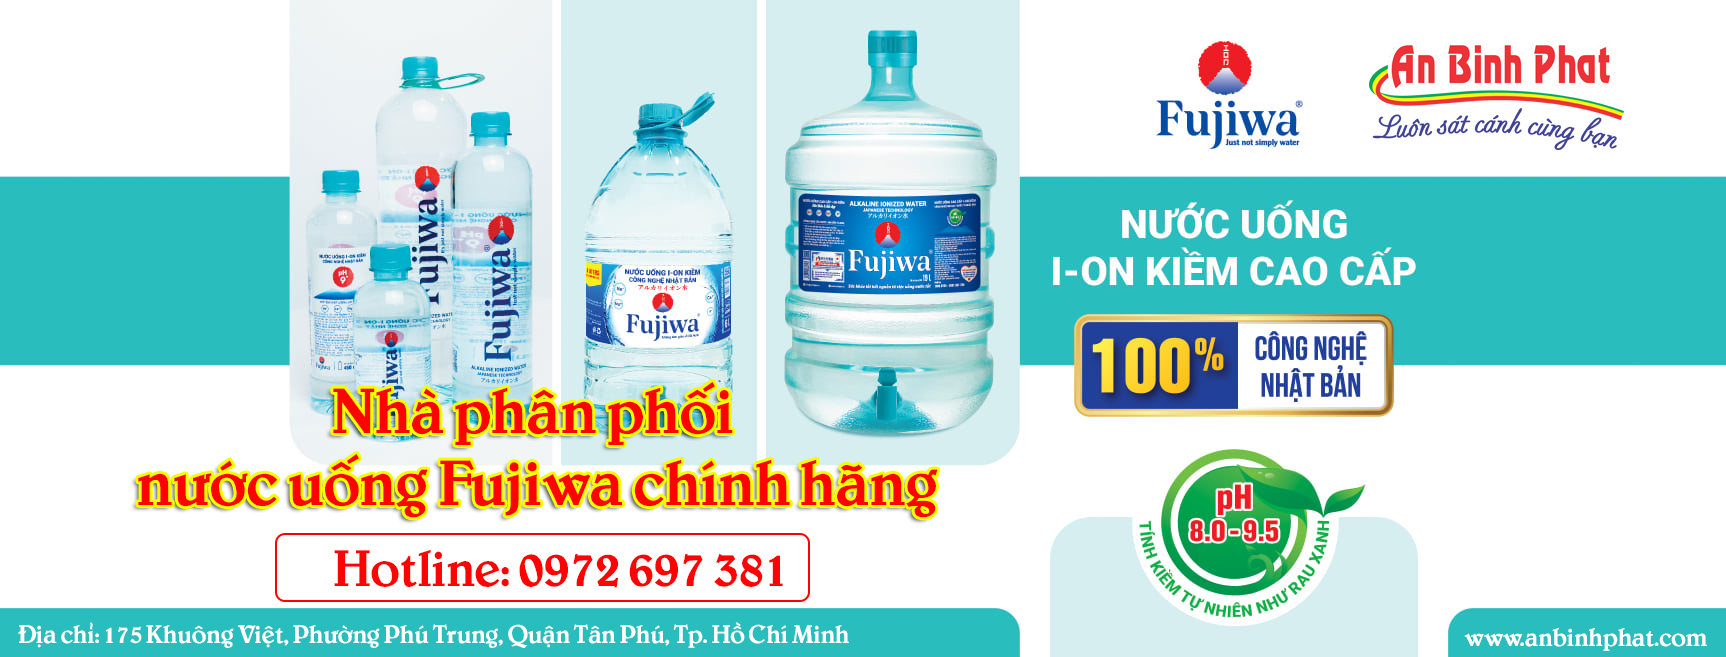 Nhà phân phối nước uống Fujiwa chính hãng An Bình Phát